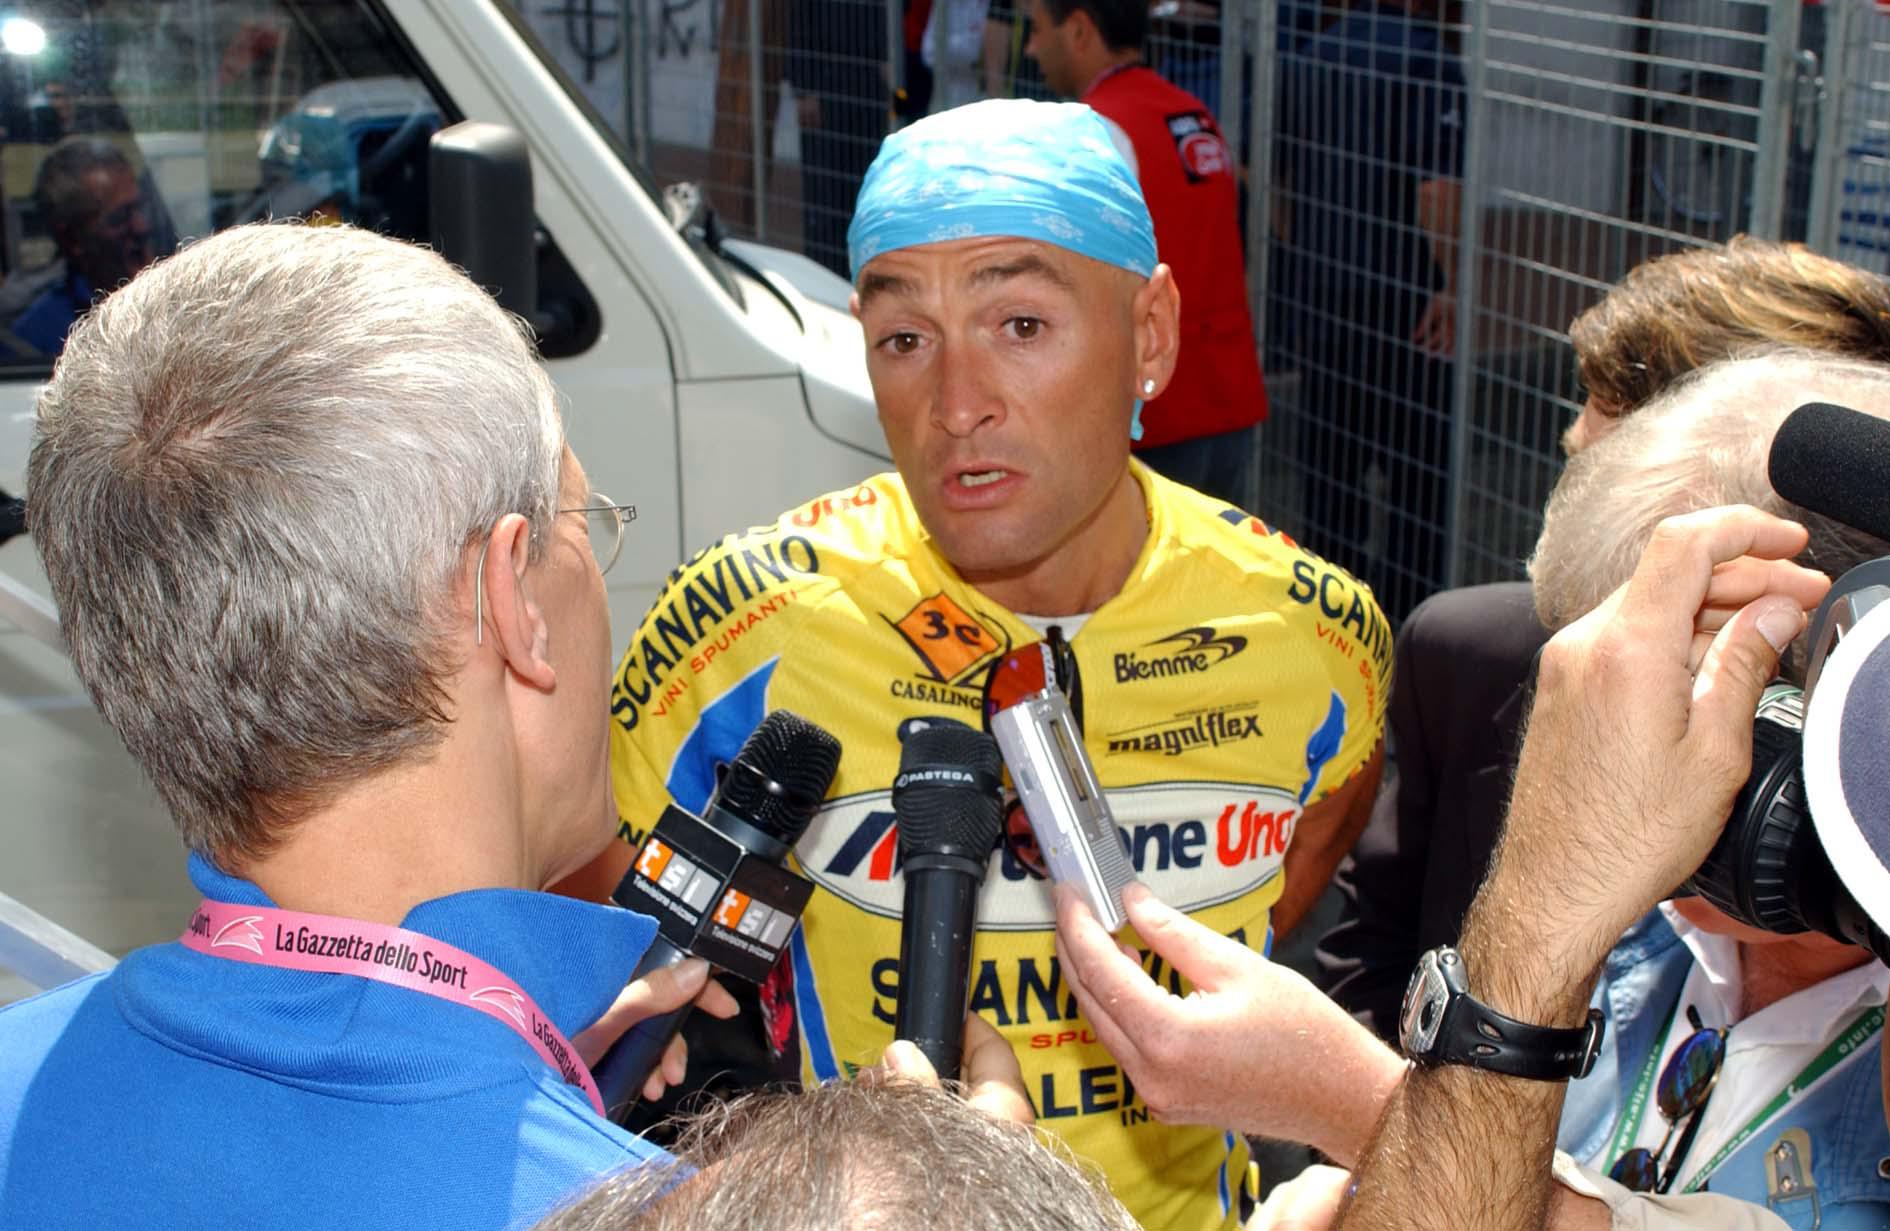 Arezzo, maggio 2003 - Giro d'Italia: ottava tappa, "Rieti-Arezzo" (INFOPHOTO)